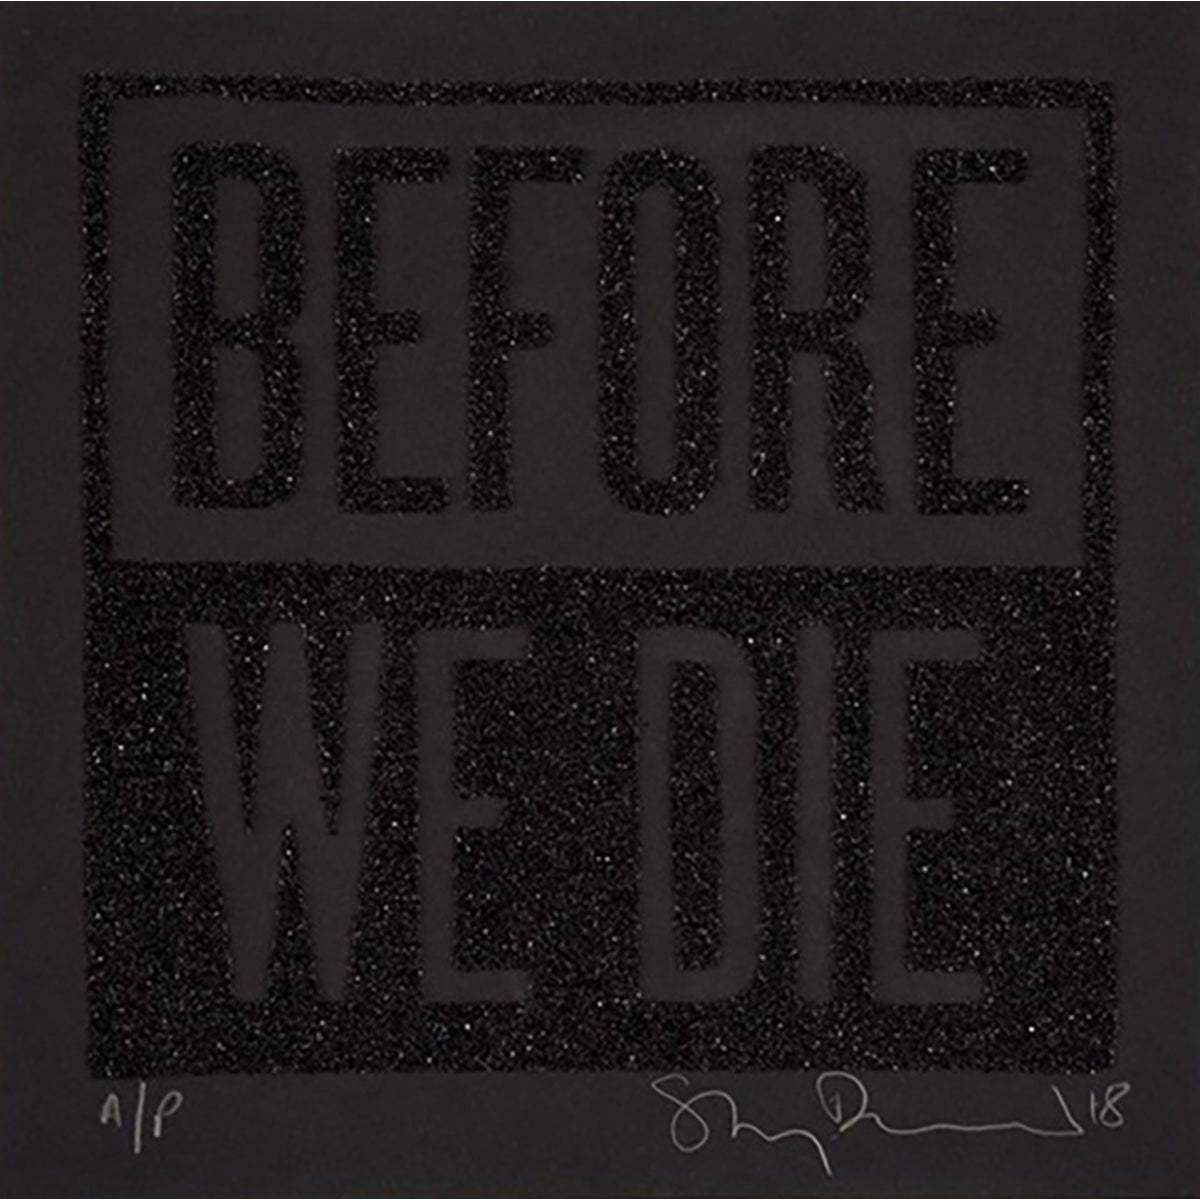 Stanley Donwood - "Before We Die (Black)" print